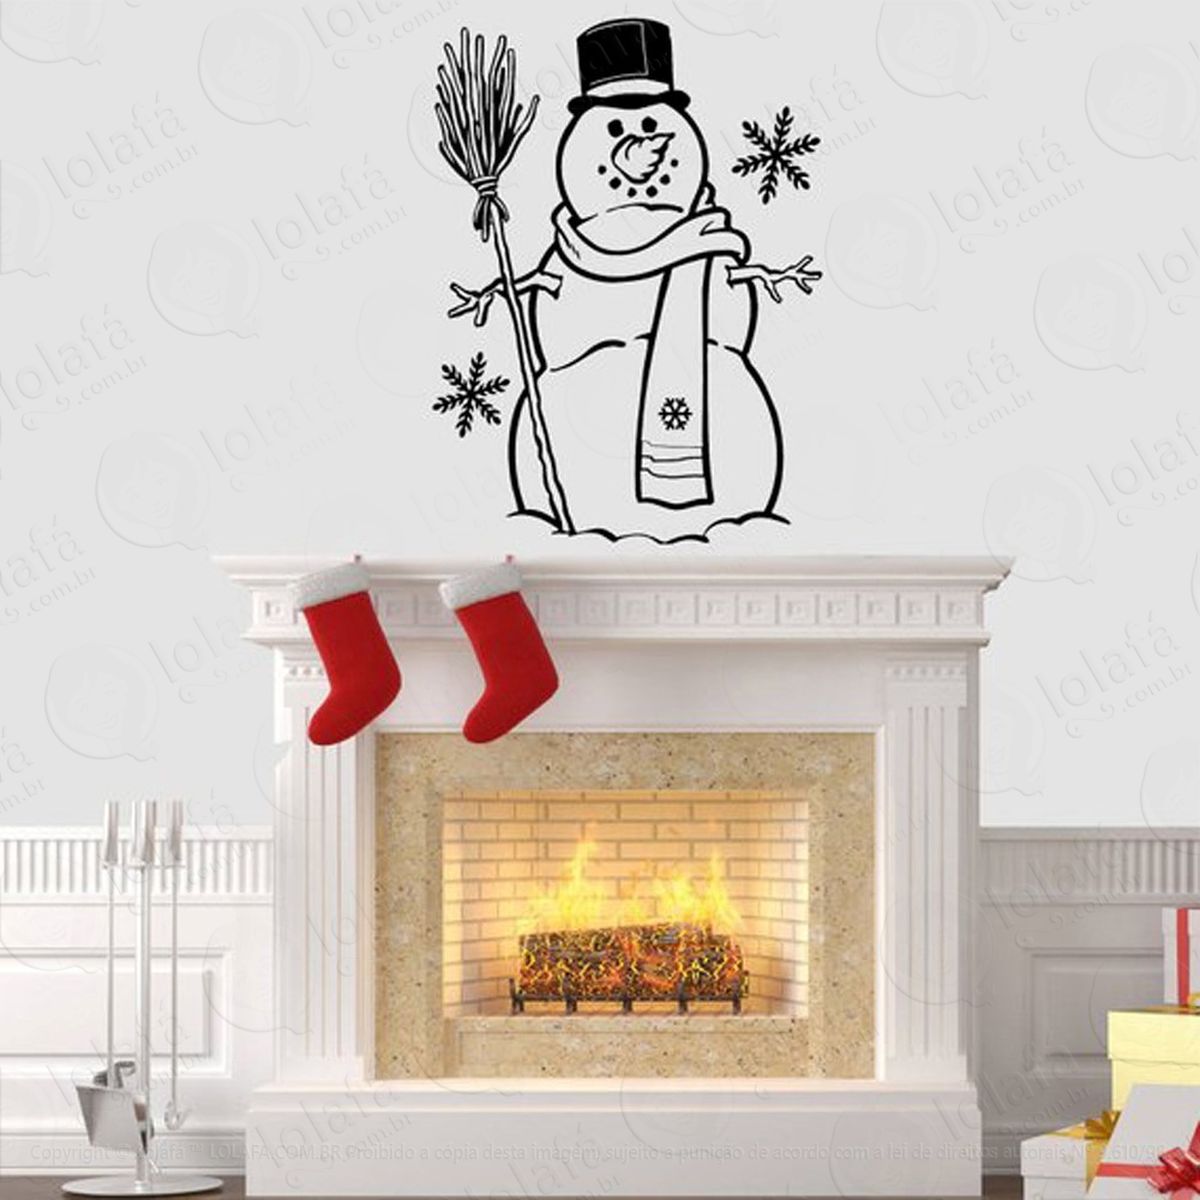 snowman adesivo de natal para vitrine, parede, porta de vidro - decoração natalina mod:248